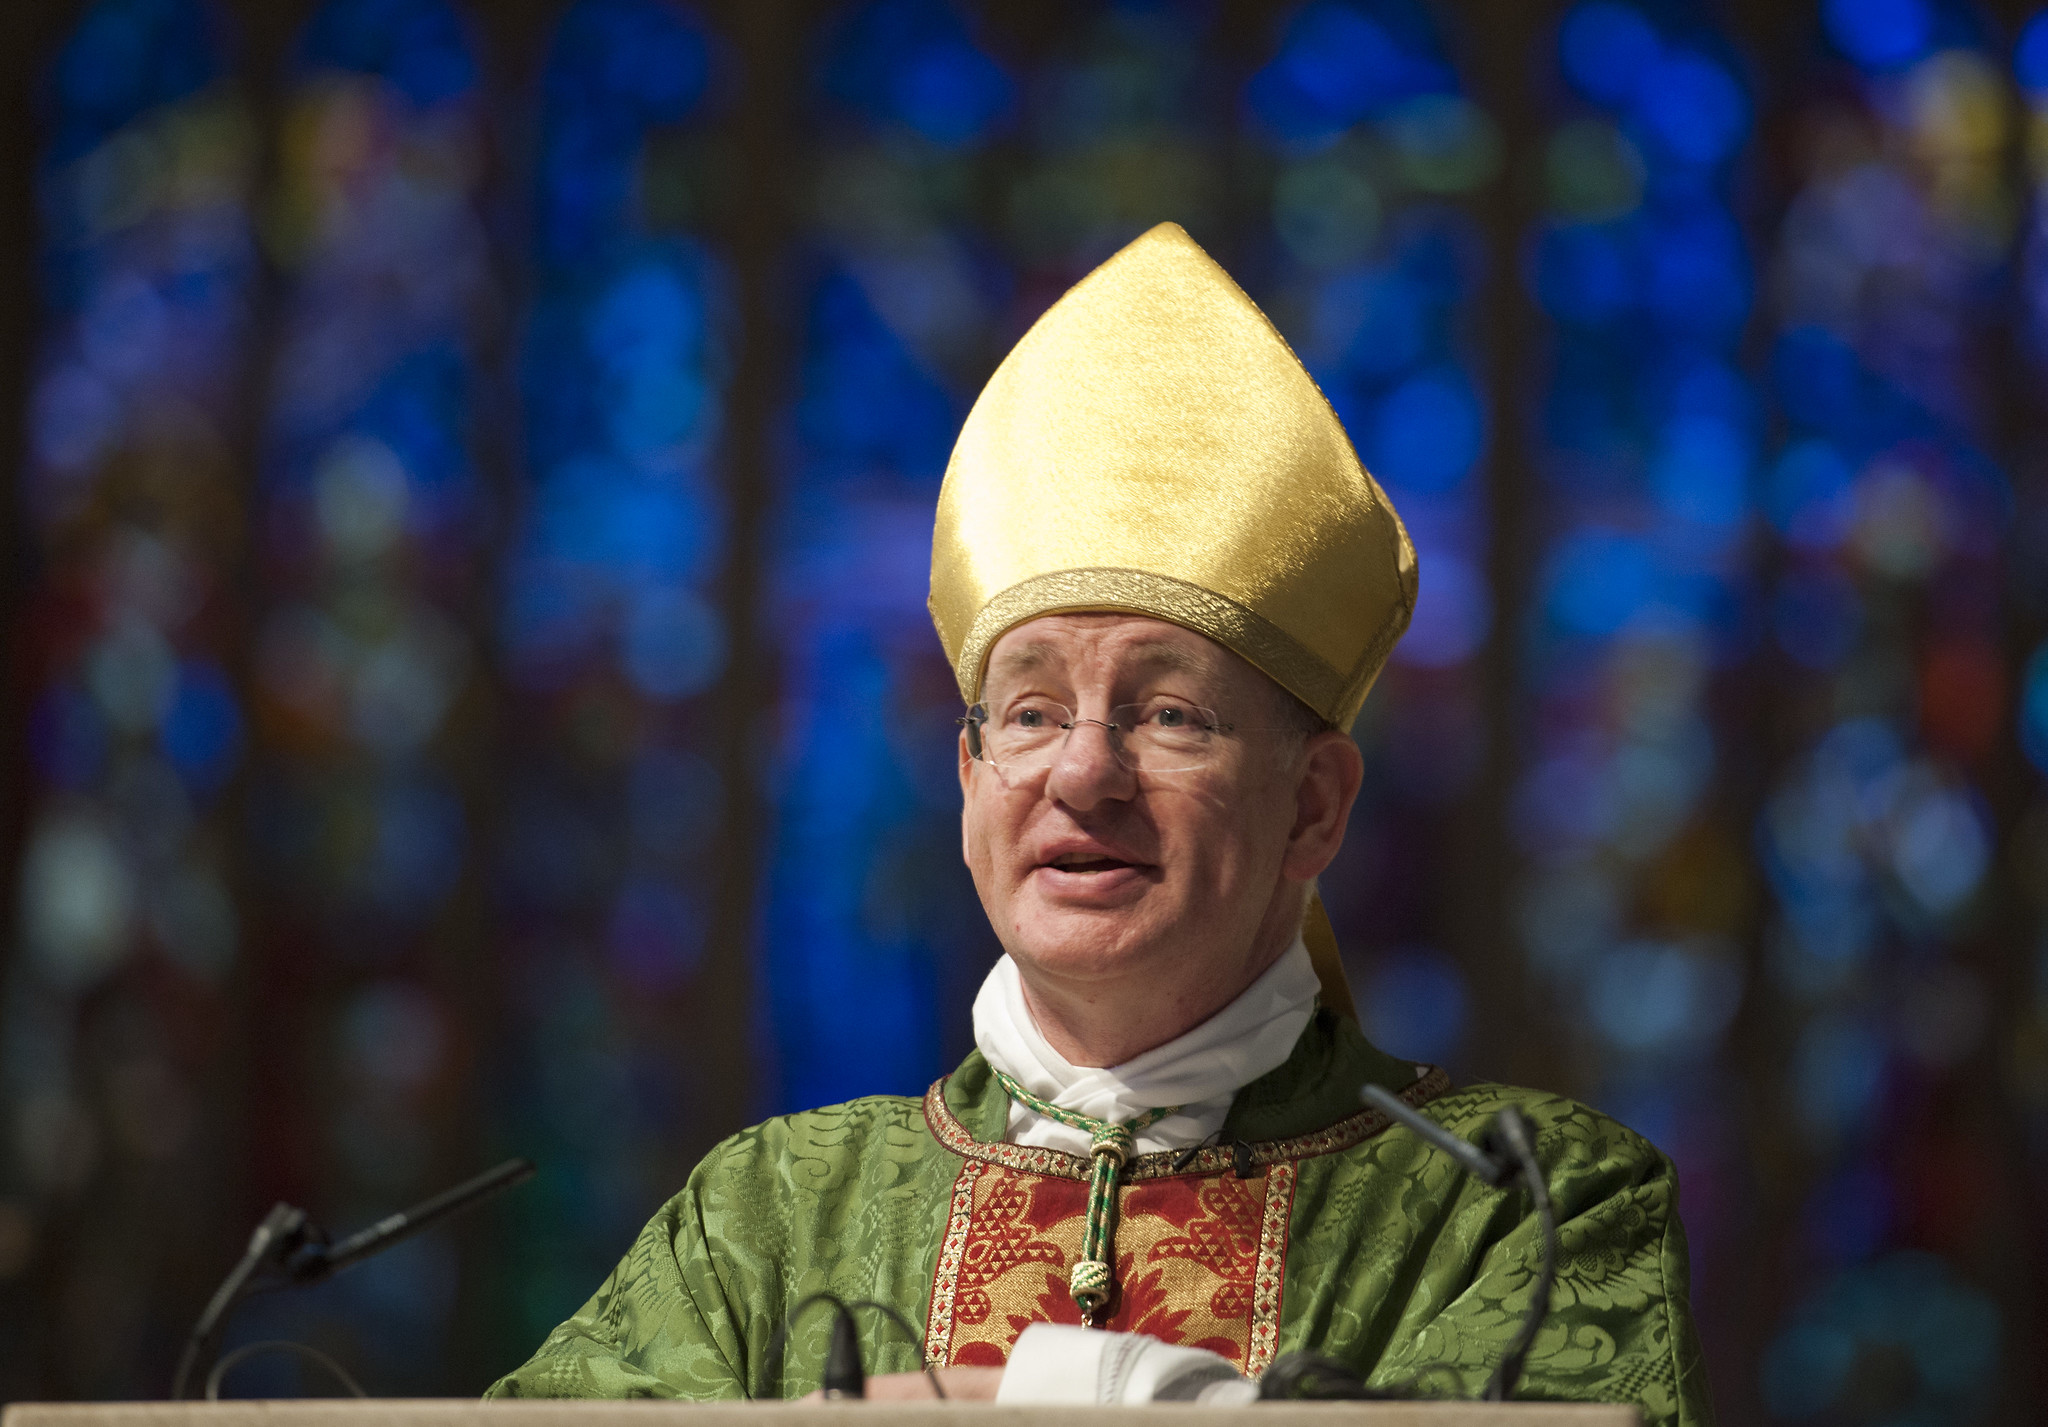 Bishop Richard Moth, © Mazur/catholicnews.org.uk